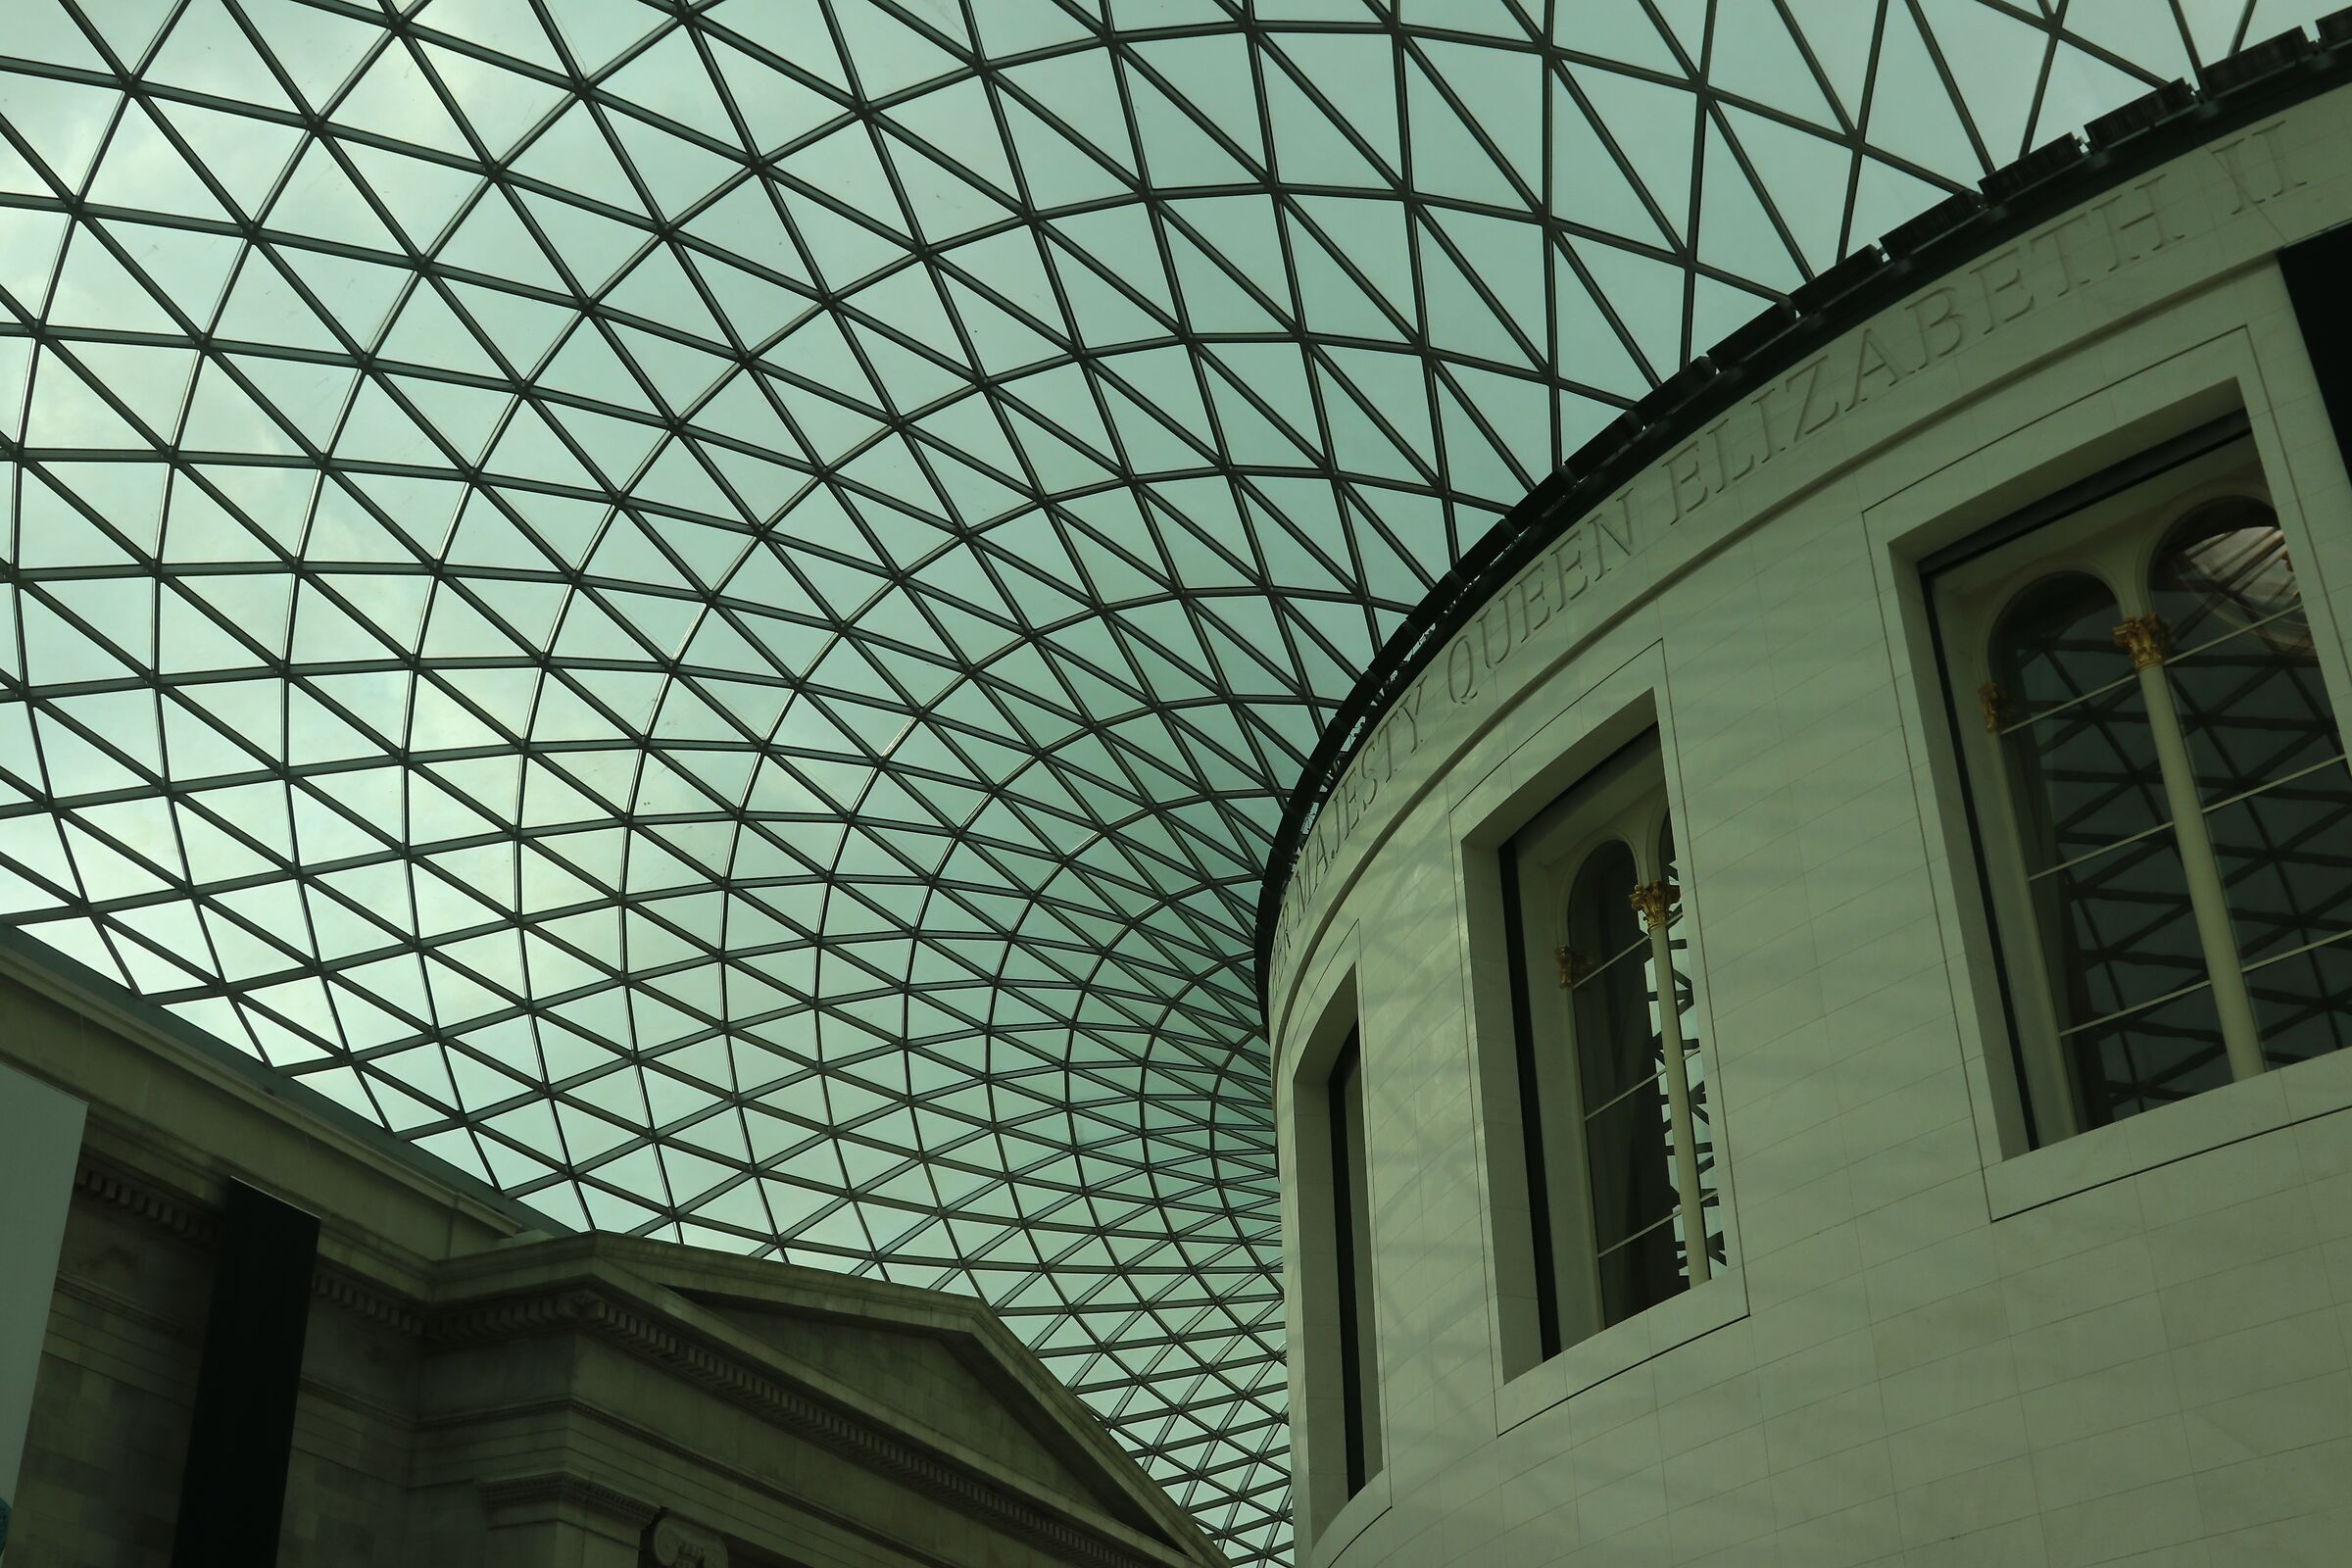 British Museum...